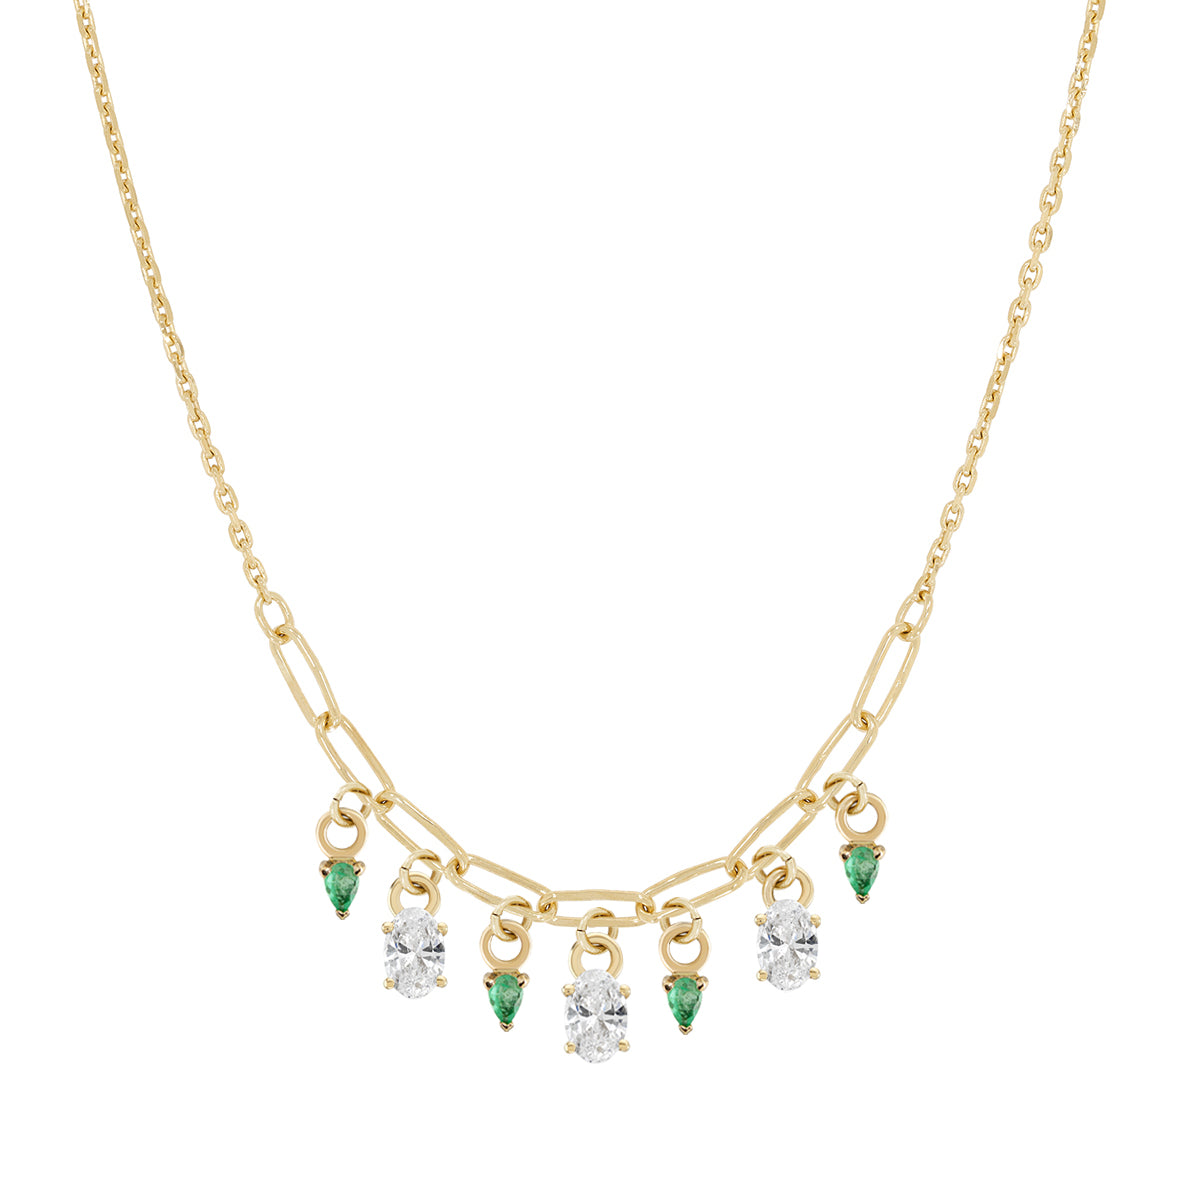 Oval & Pear Cut Diamond & Emerald Necklace